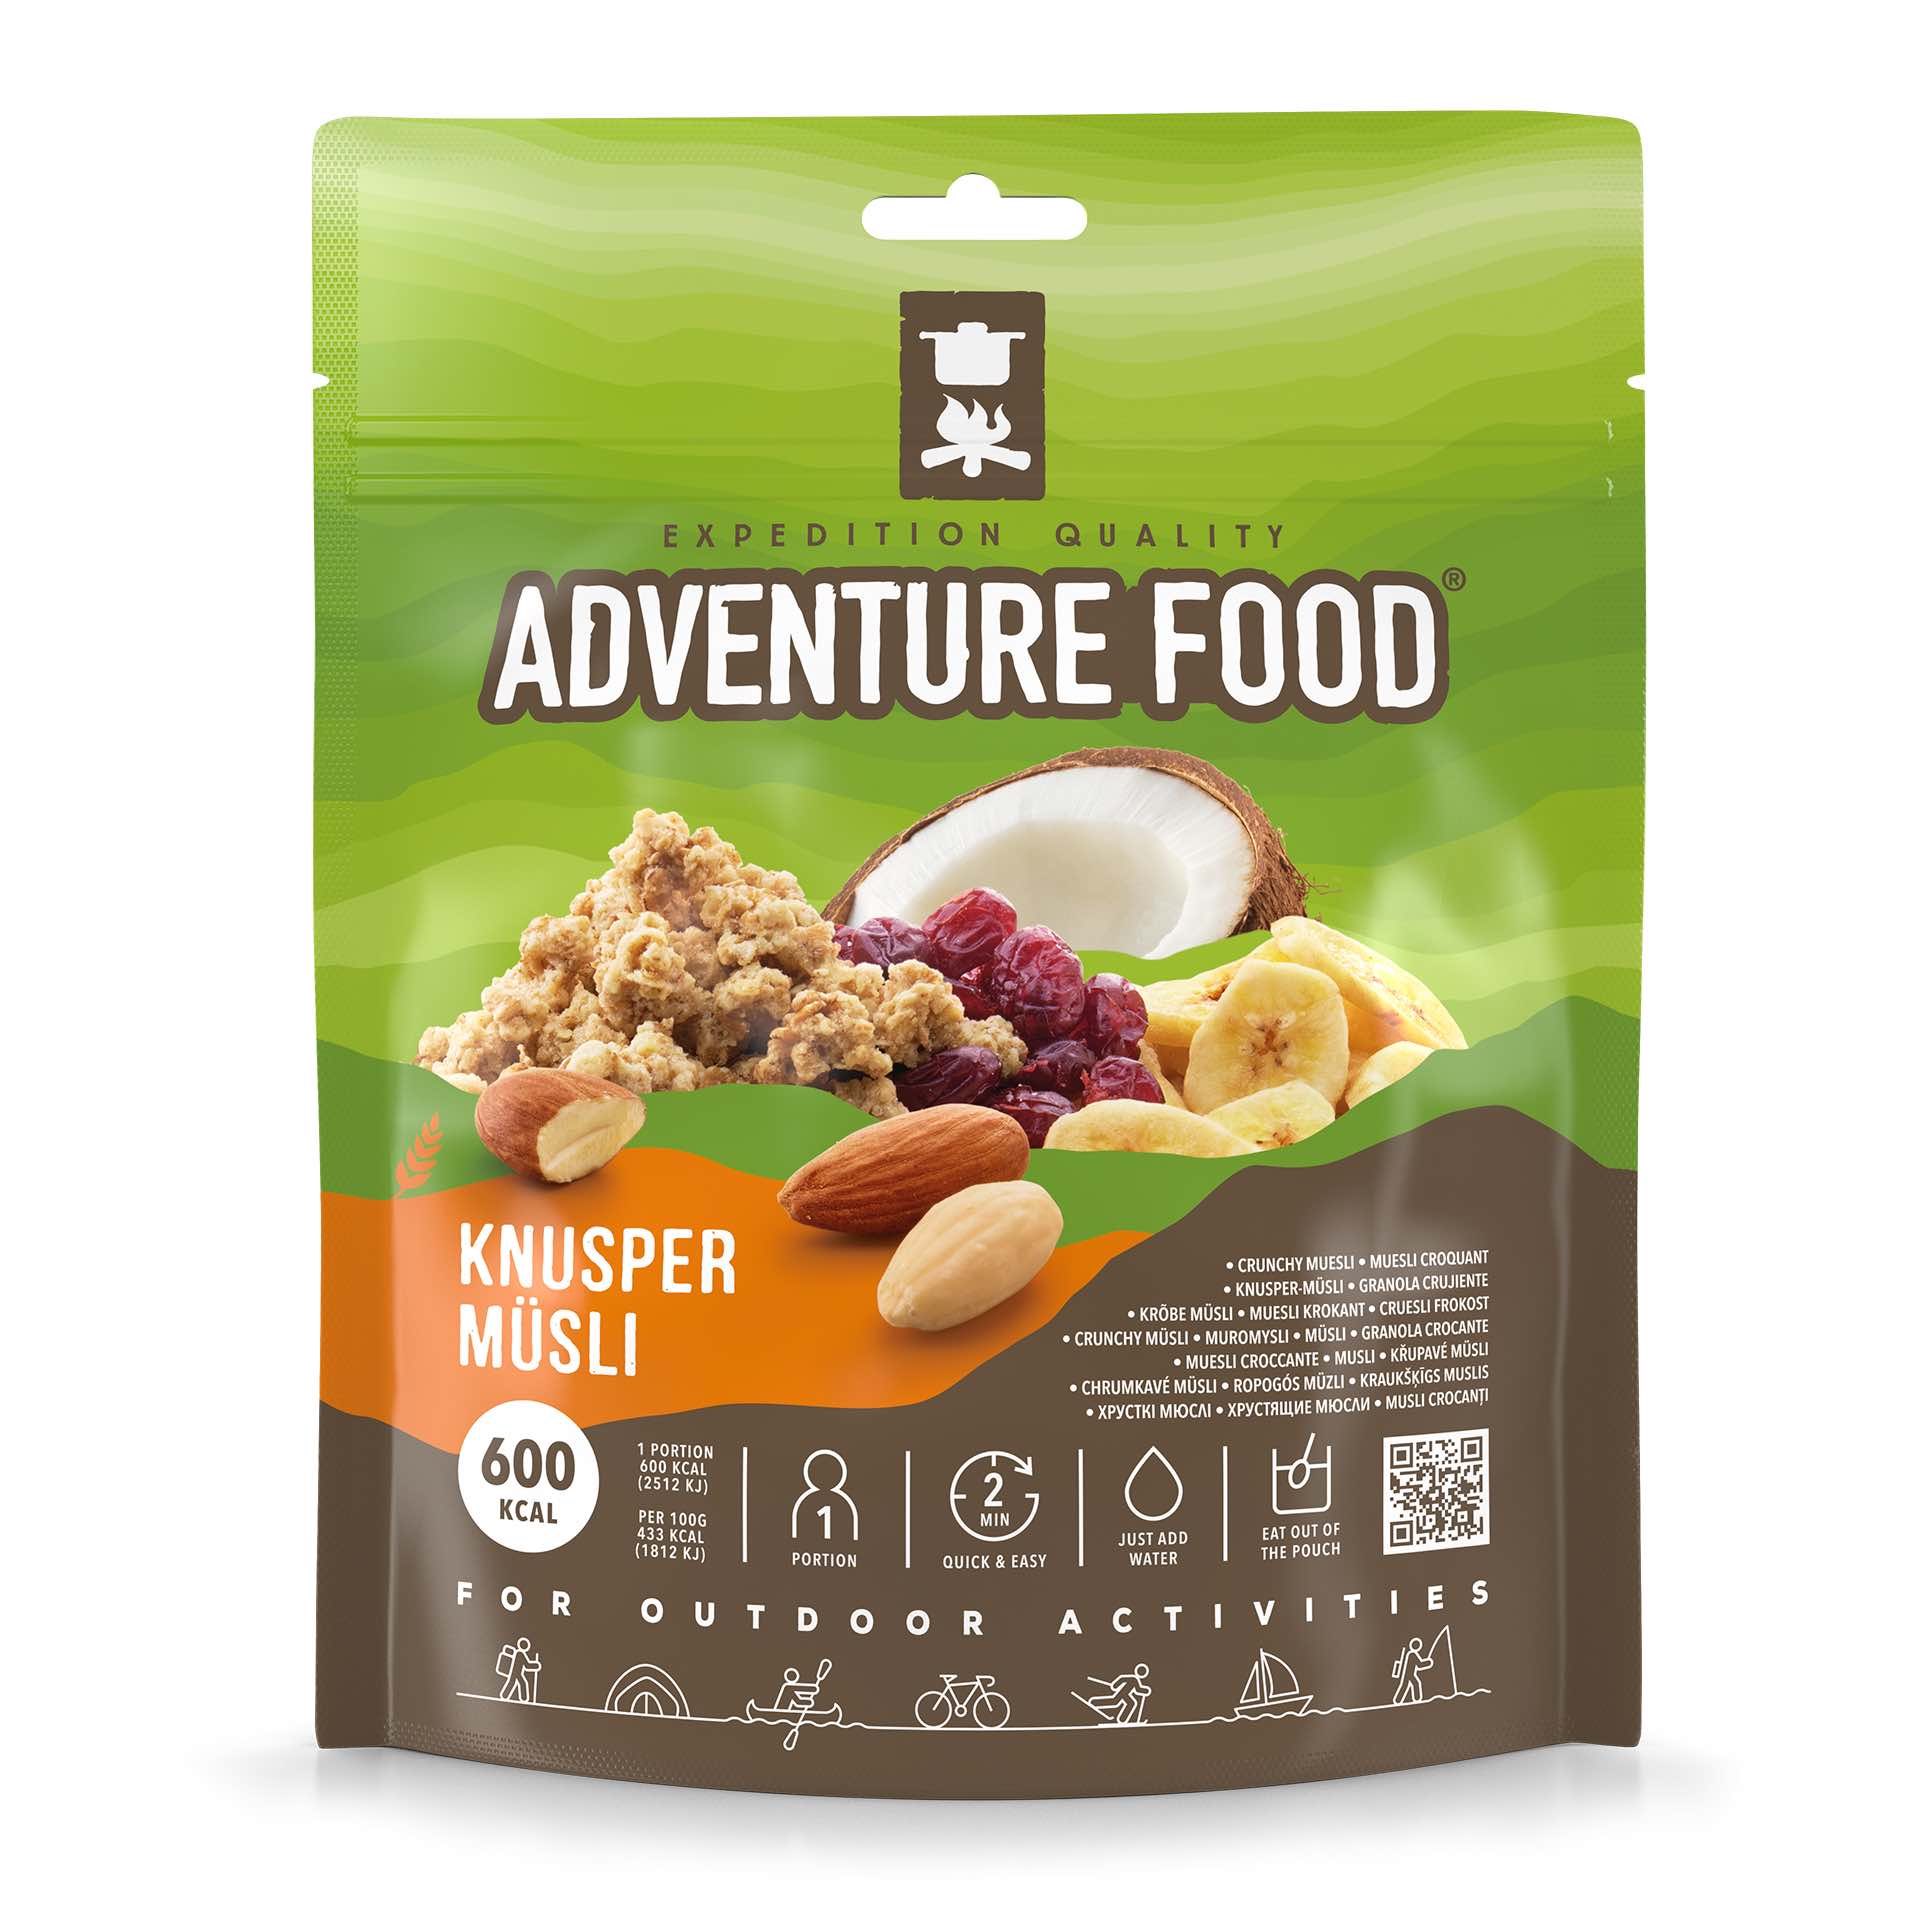 Adventure Food Knusper Müsli (18-pack)